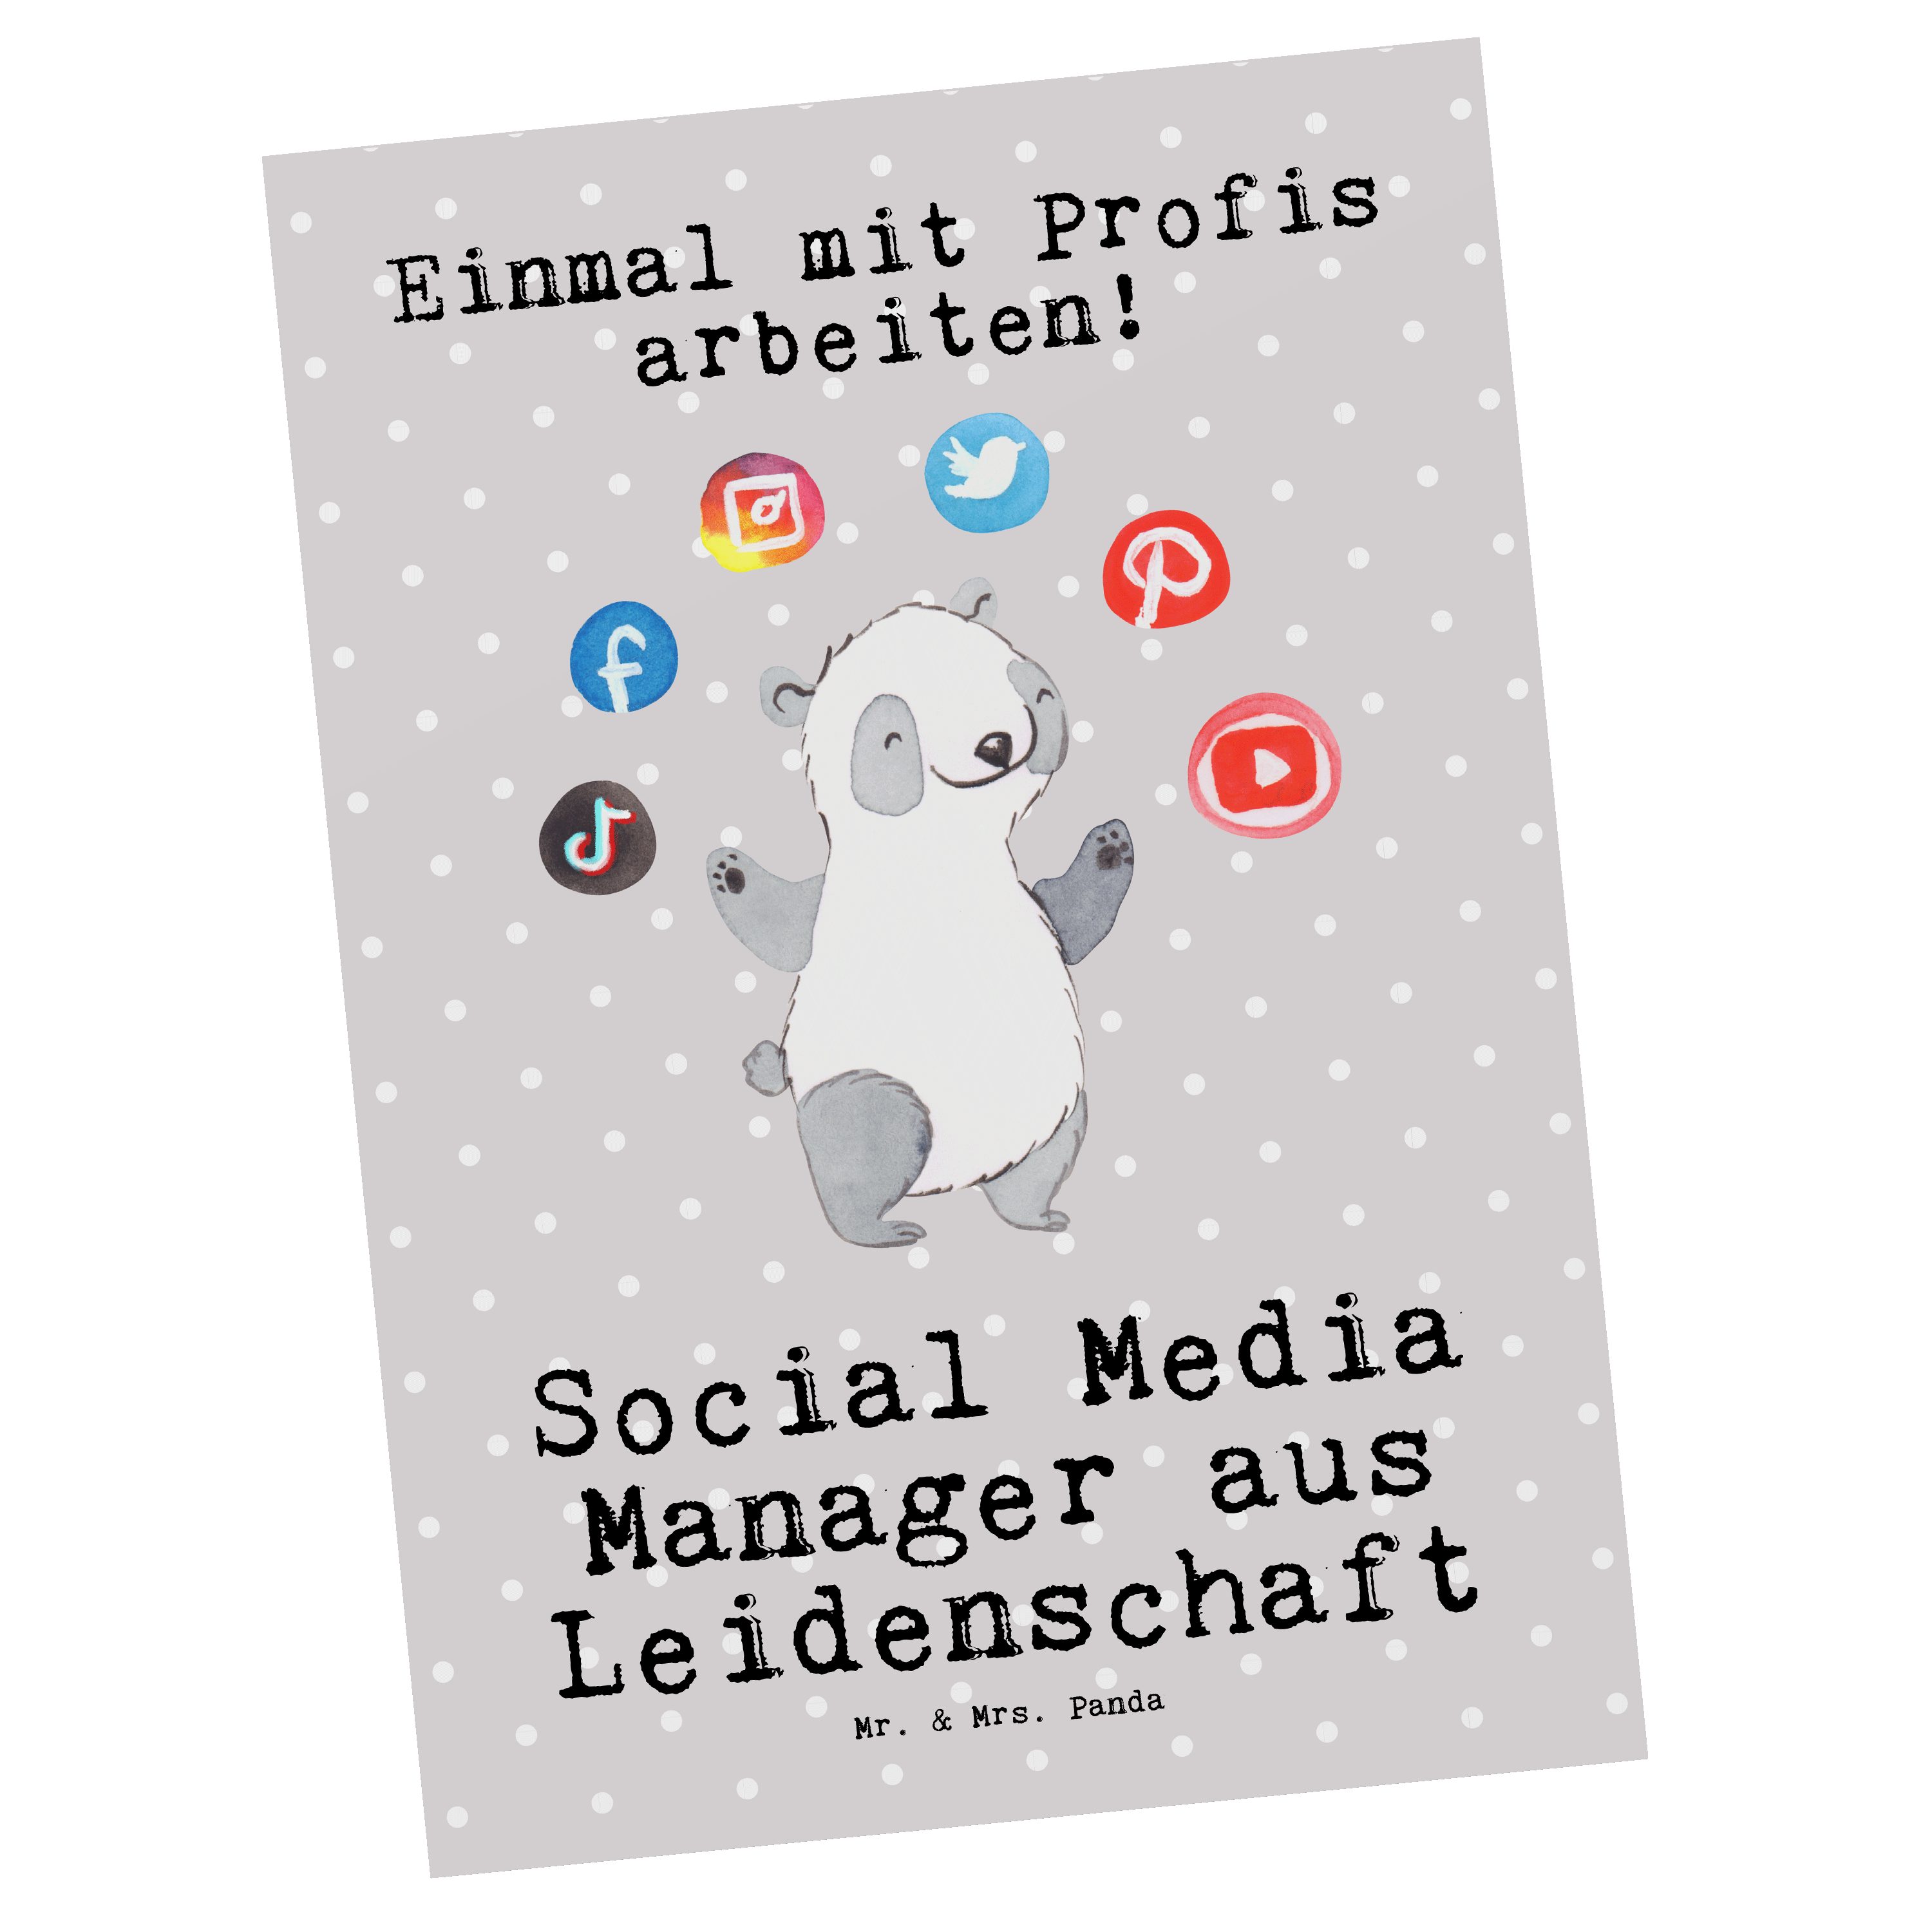 Mr. & Mrs. Panda Postkarte Social Media Manager aus Leidenschaft - Grau Pastell - Geschenk, Dank